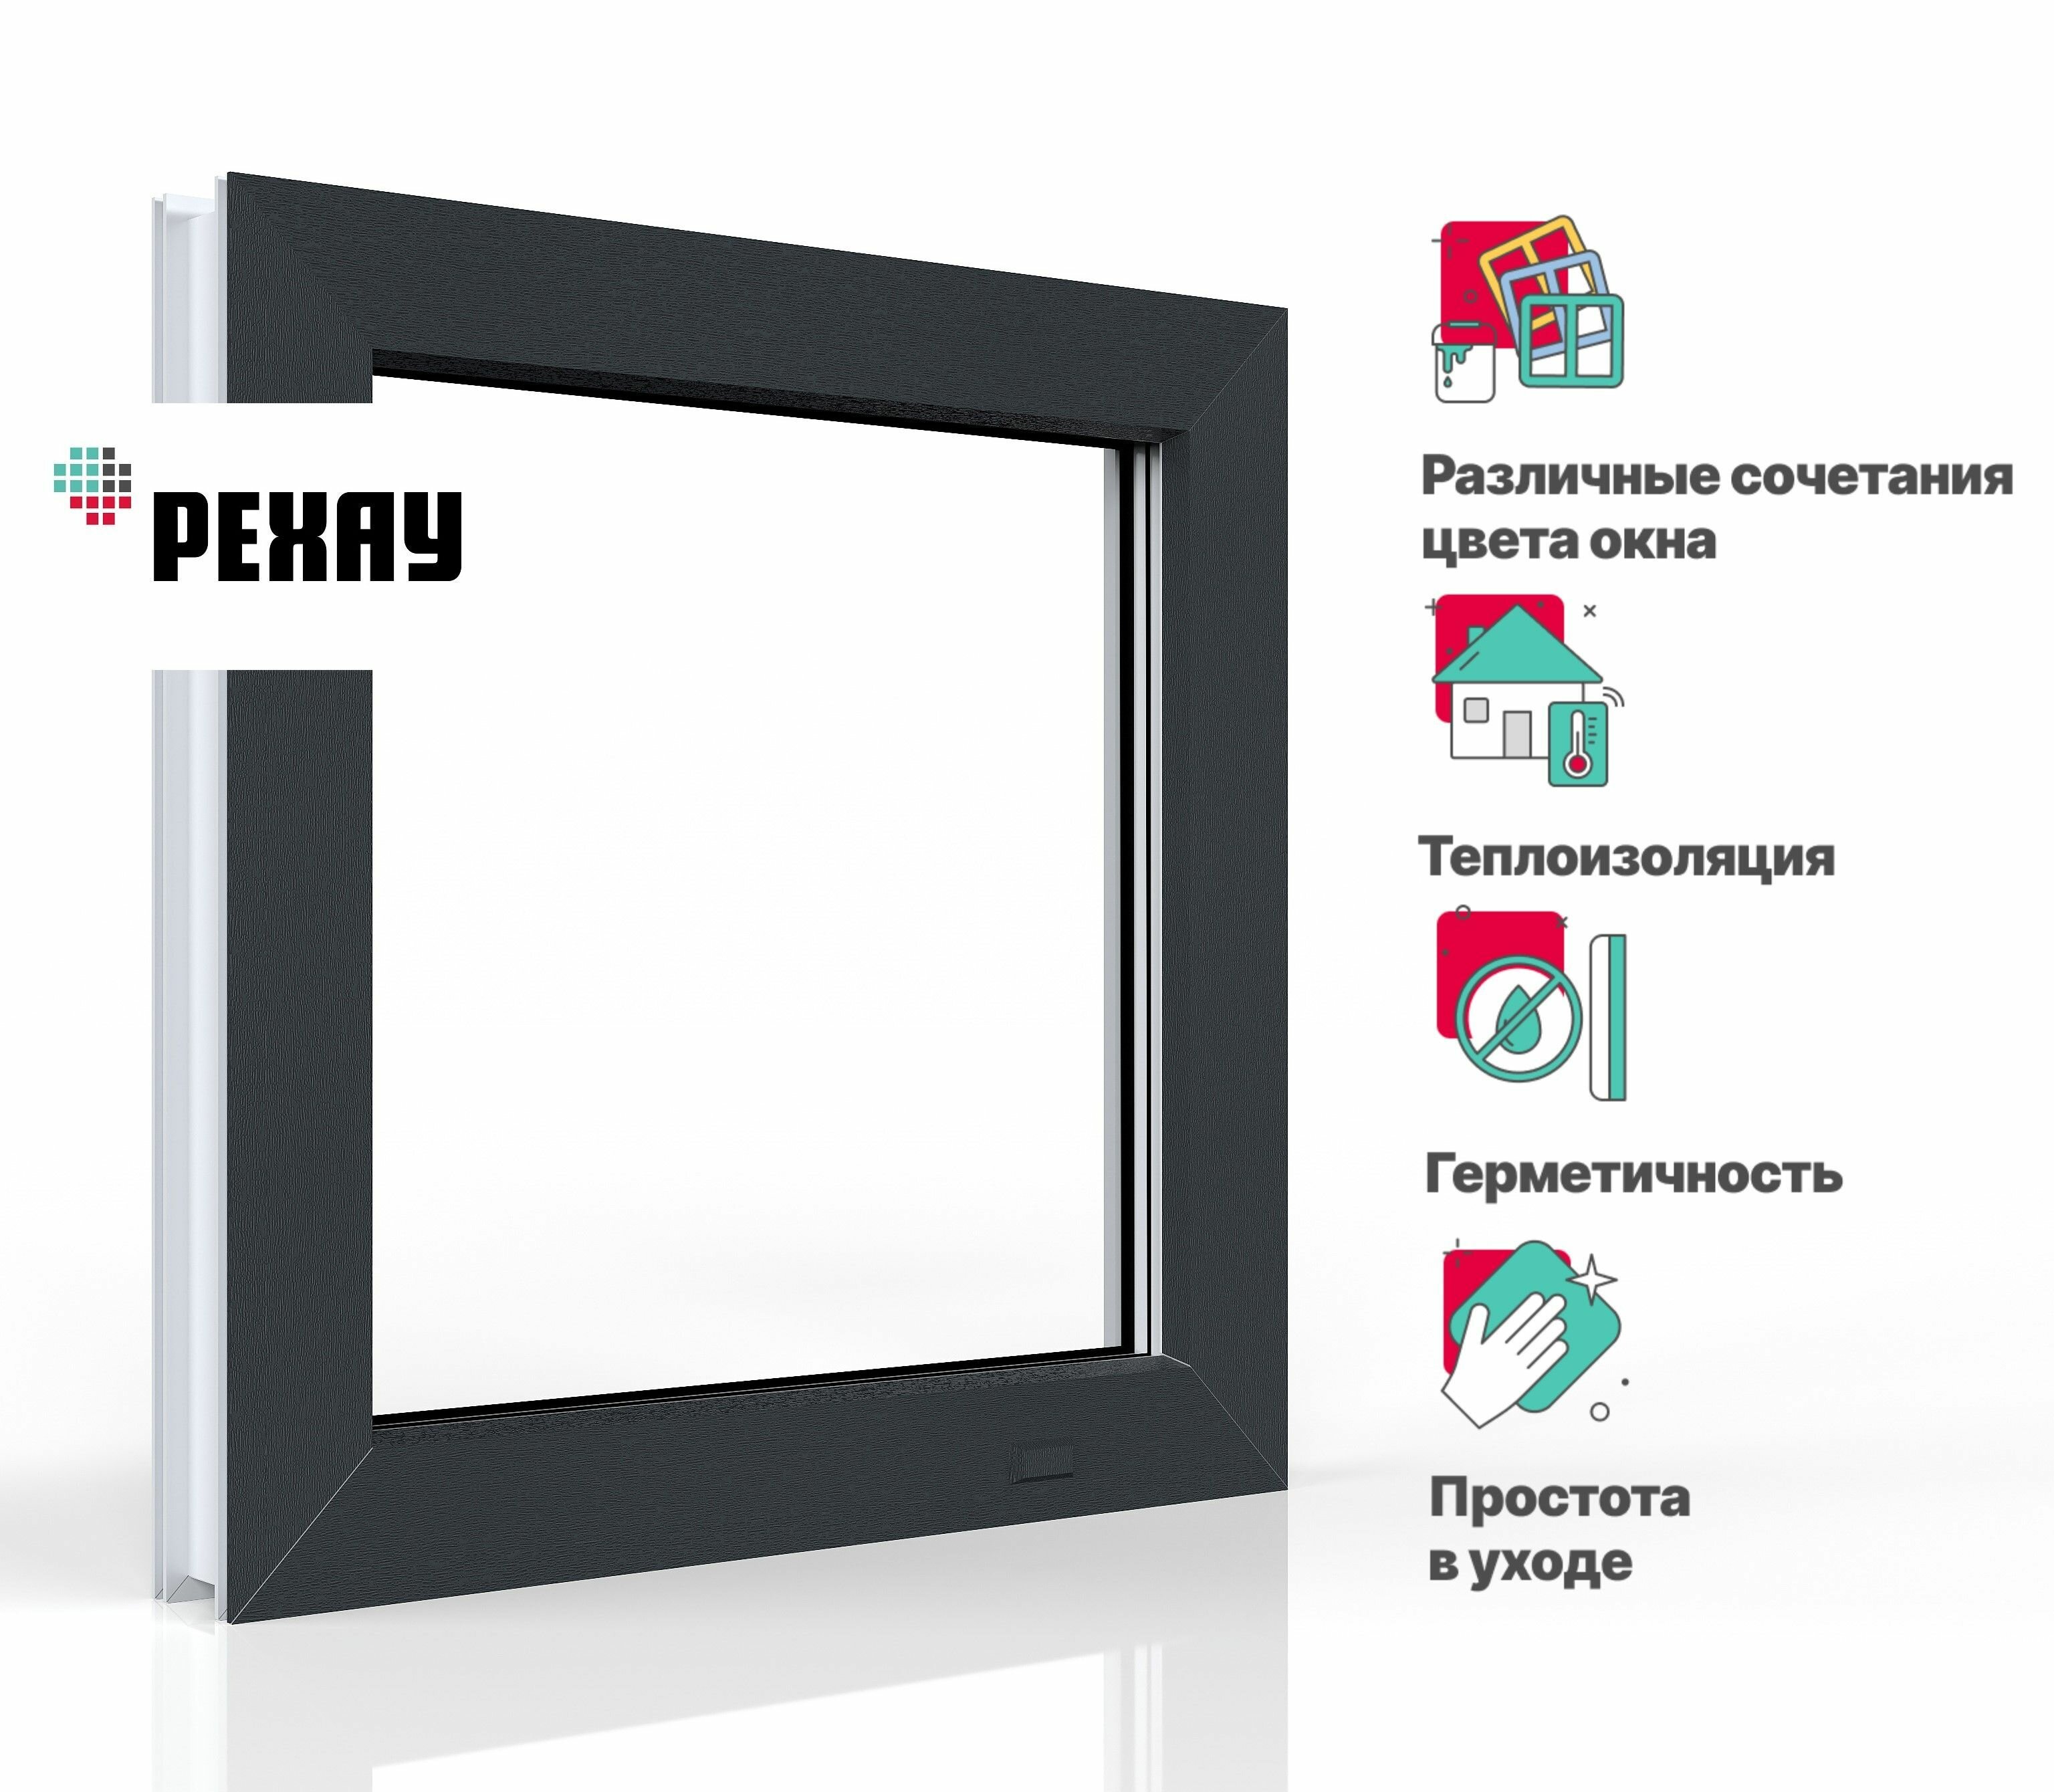 Пластиковое окно ПВХ рехау BLITZ 800х800 мм (ВхШ) с учетом подставочного профиля глухое двухкамерный стеклопакет белое